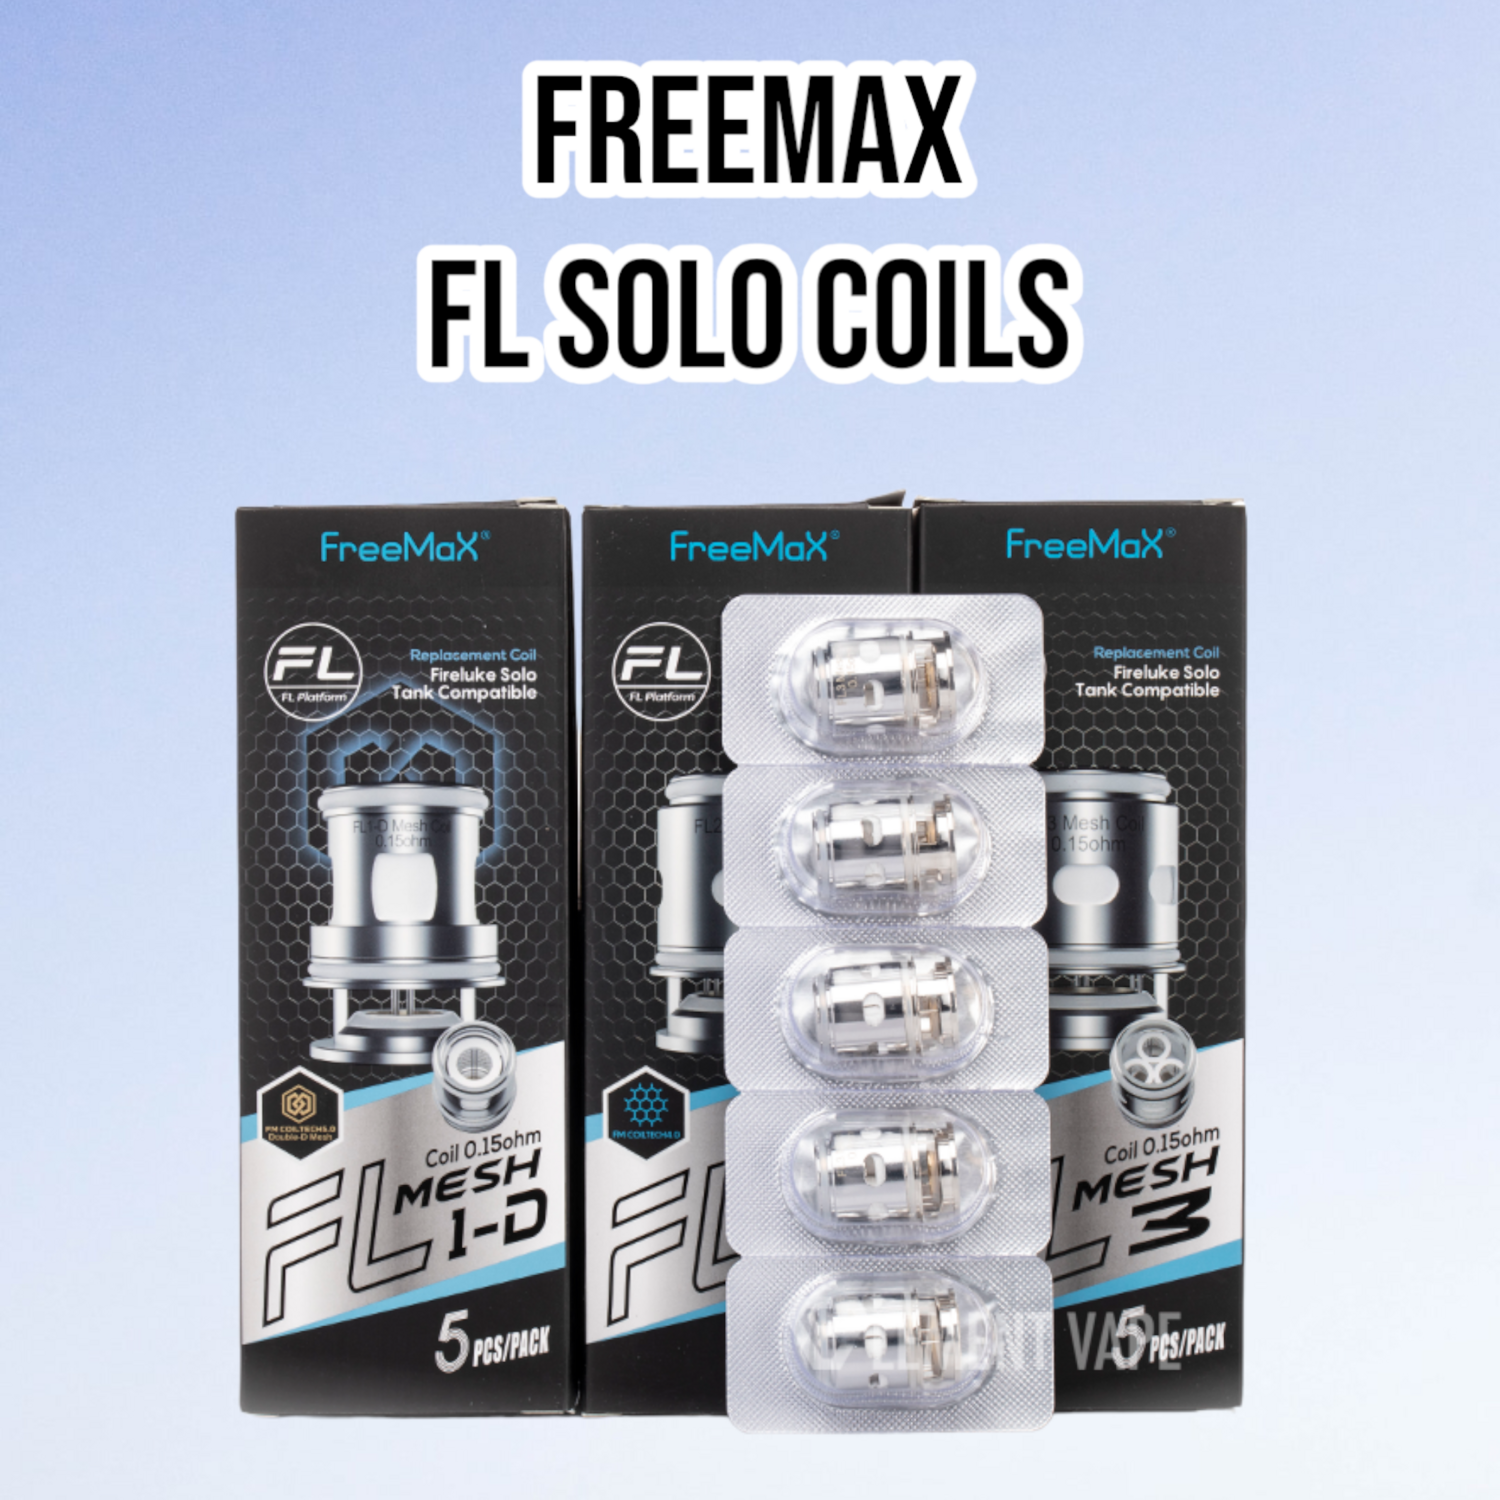 Freemax FL Solo Coils (Single)